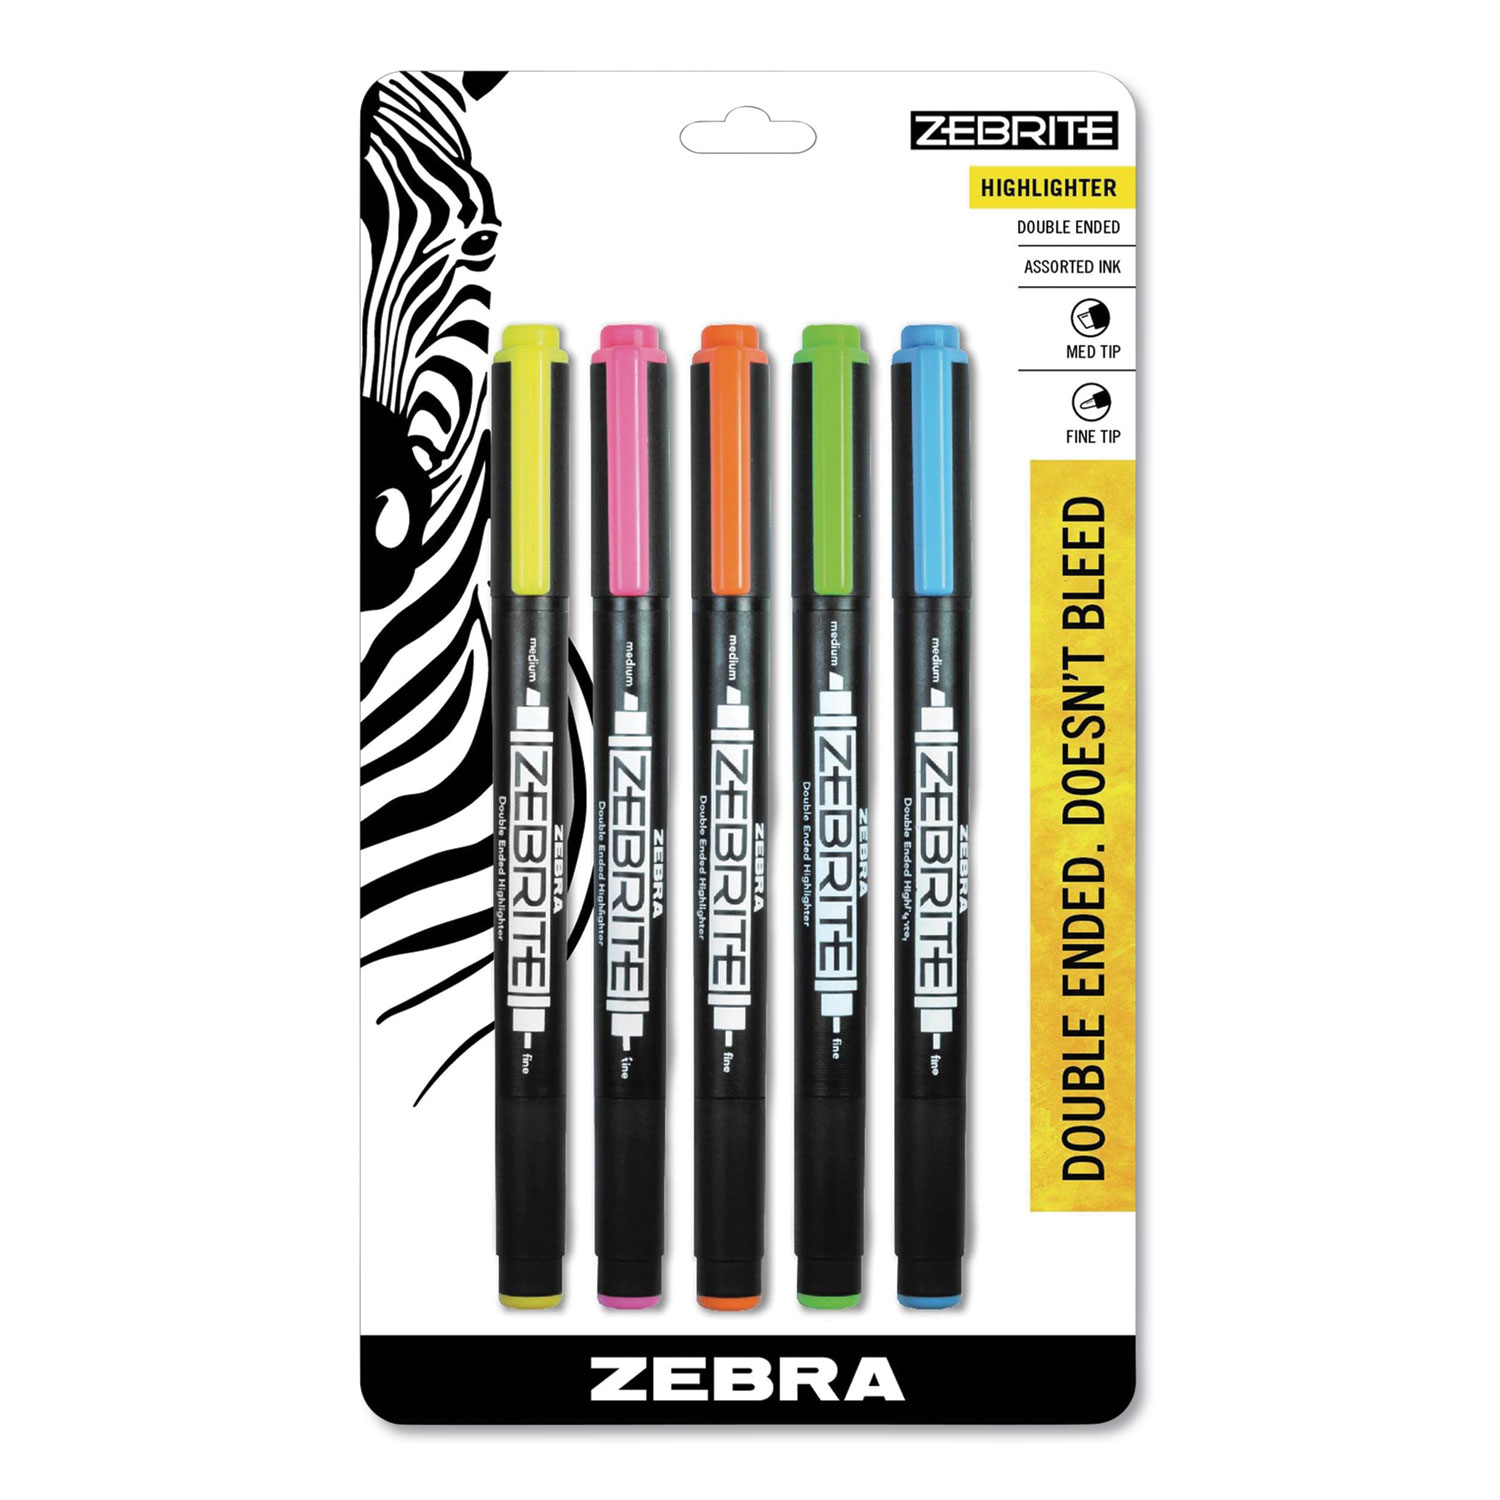  Zebra 75005 Zebrite Eco Double-ended Highlighter, Chisel/Bullet Tip, Assorted Colors, 5/Set (ZEB75005) 